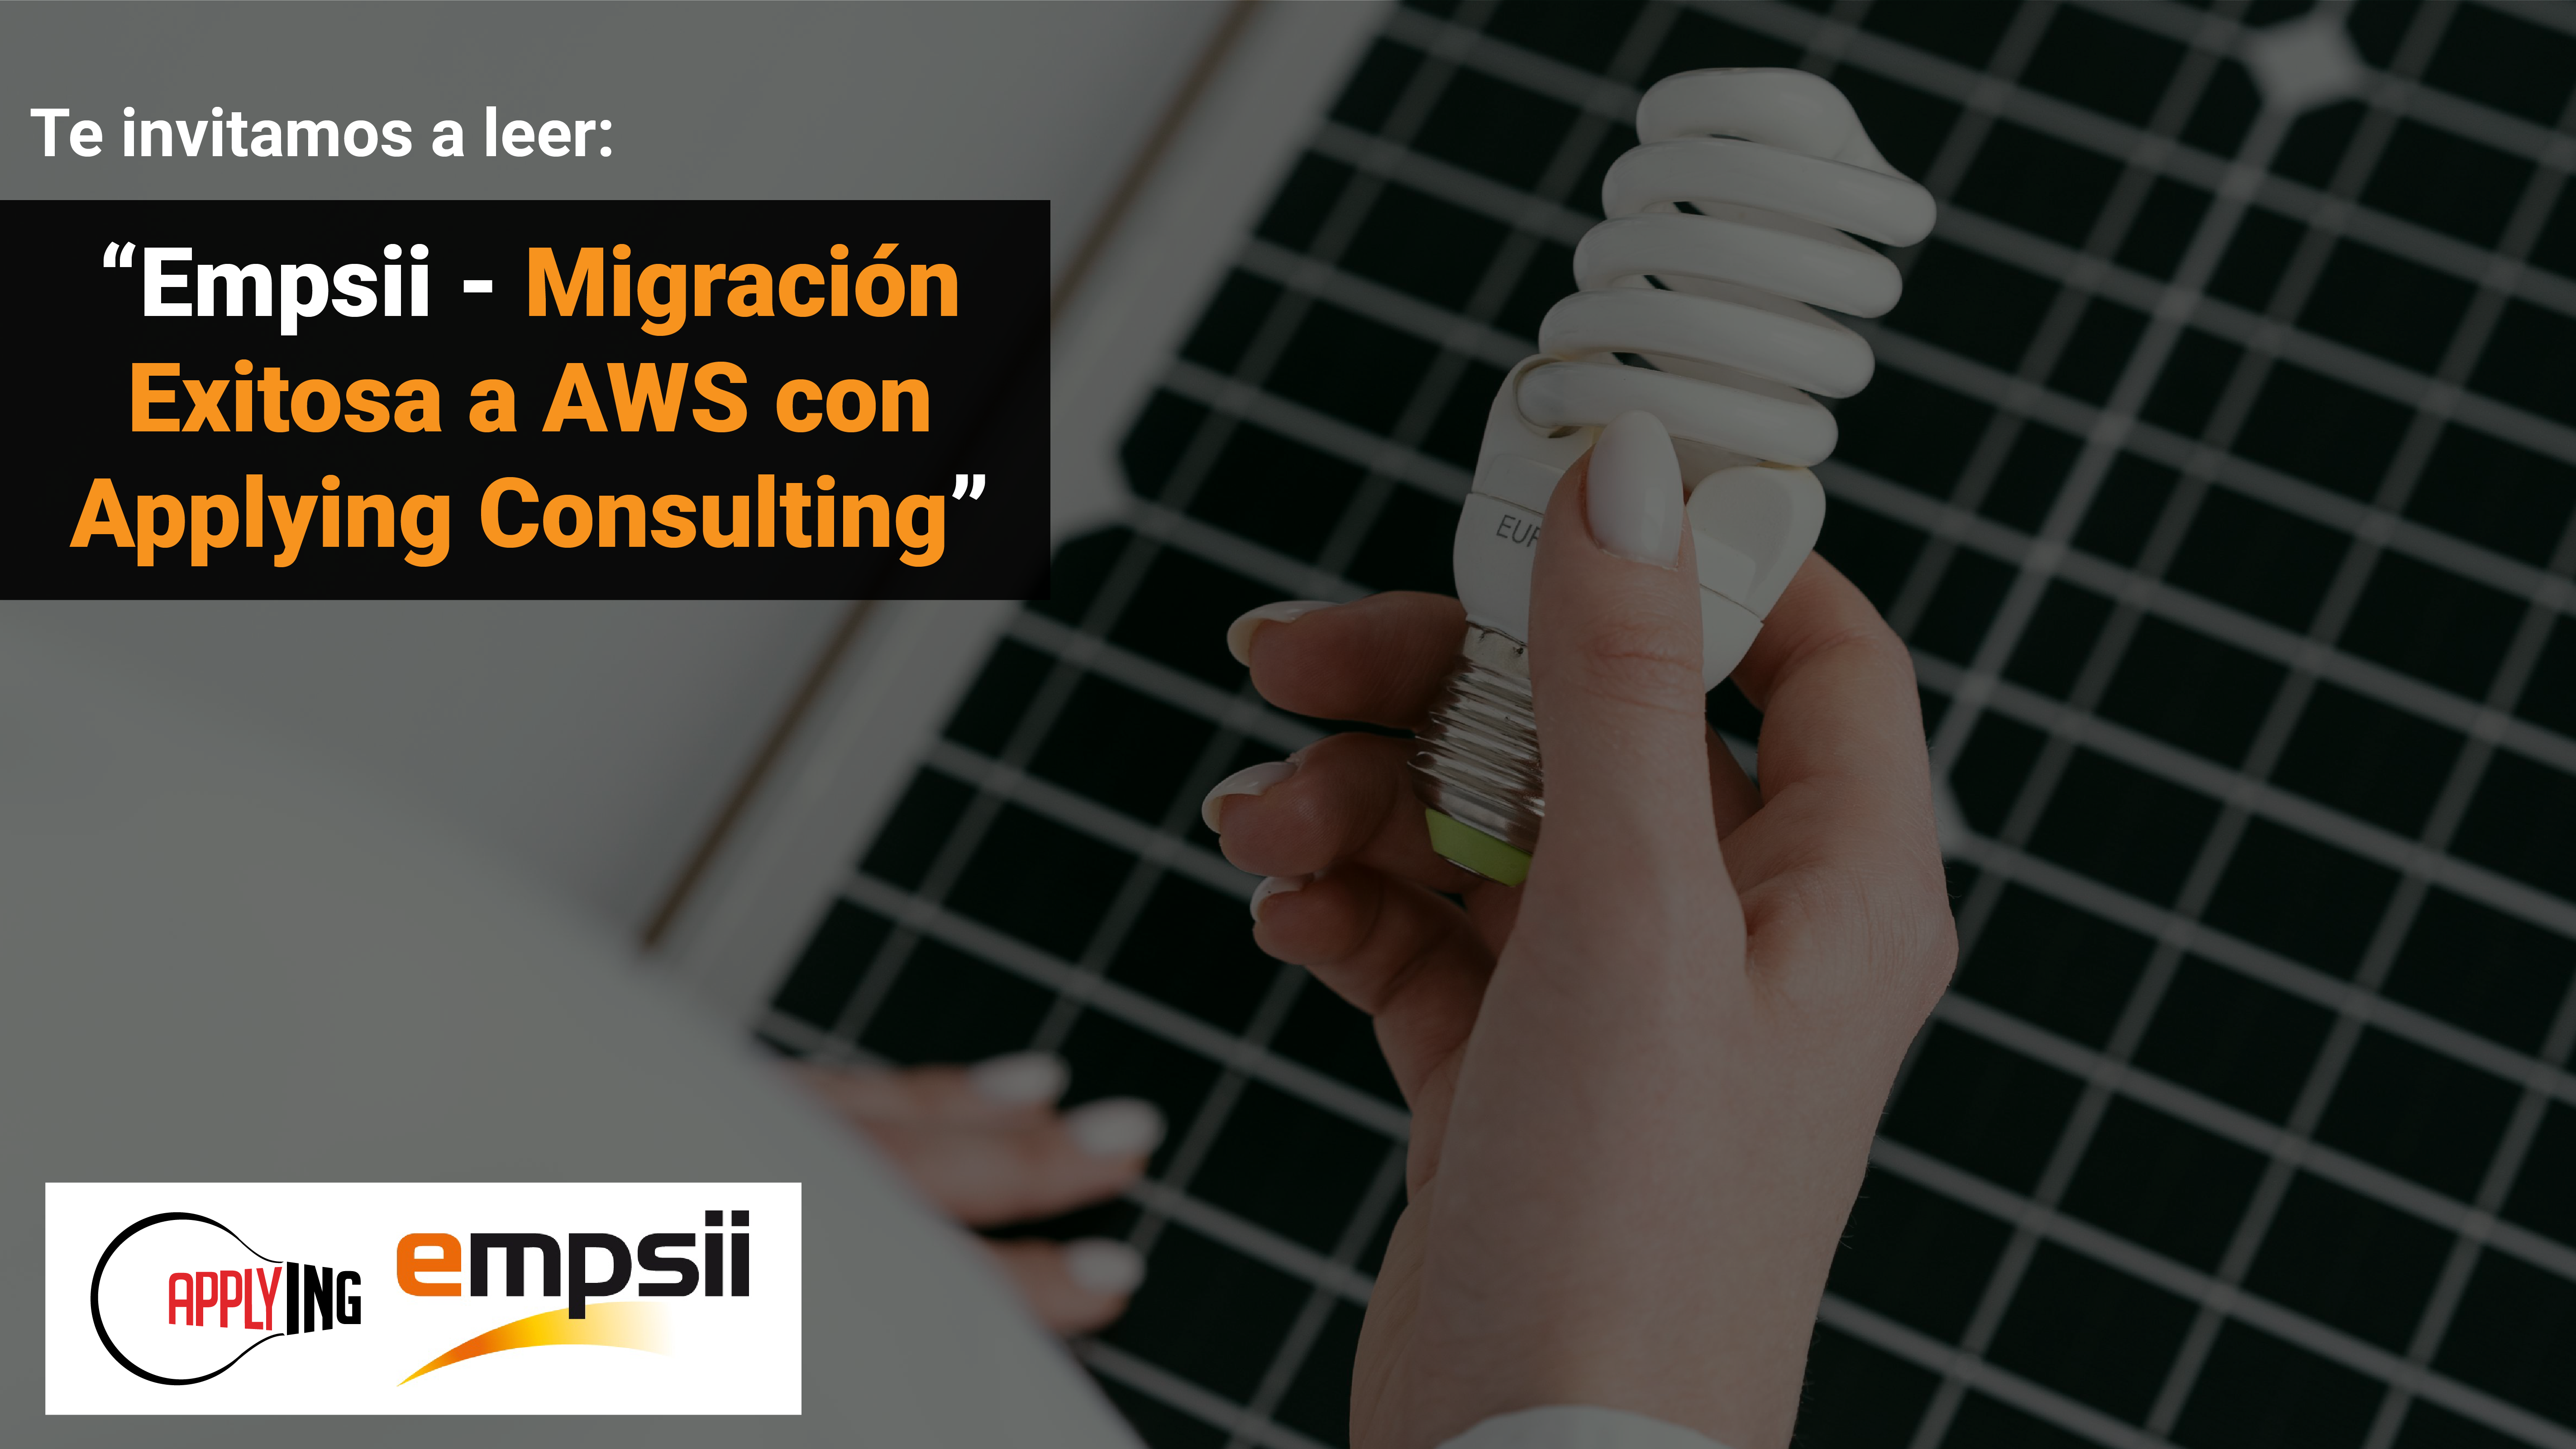 Empsii - Migración Exitosa a AWS con Applying Consulting